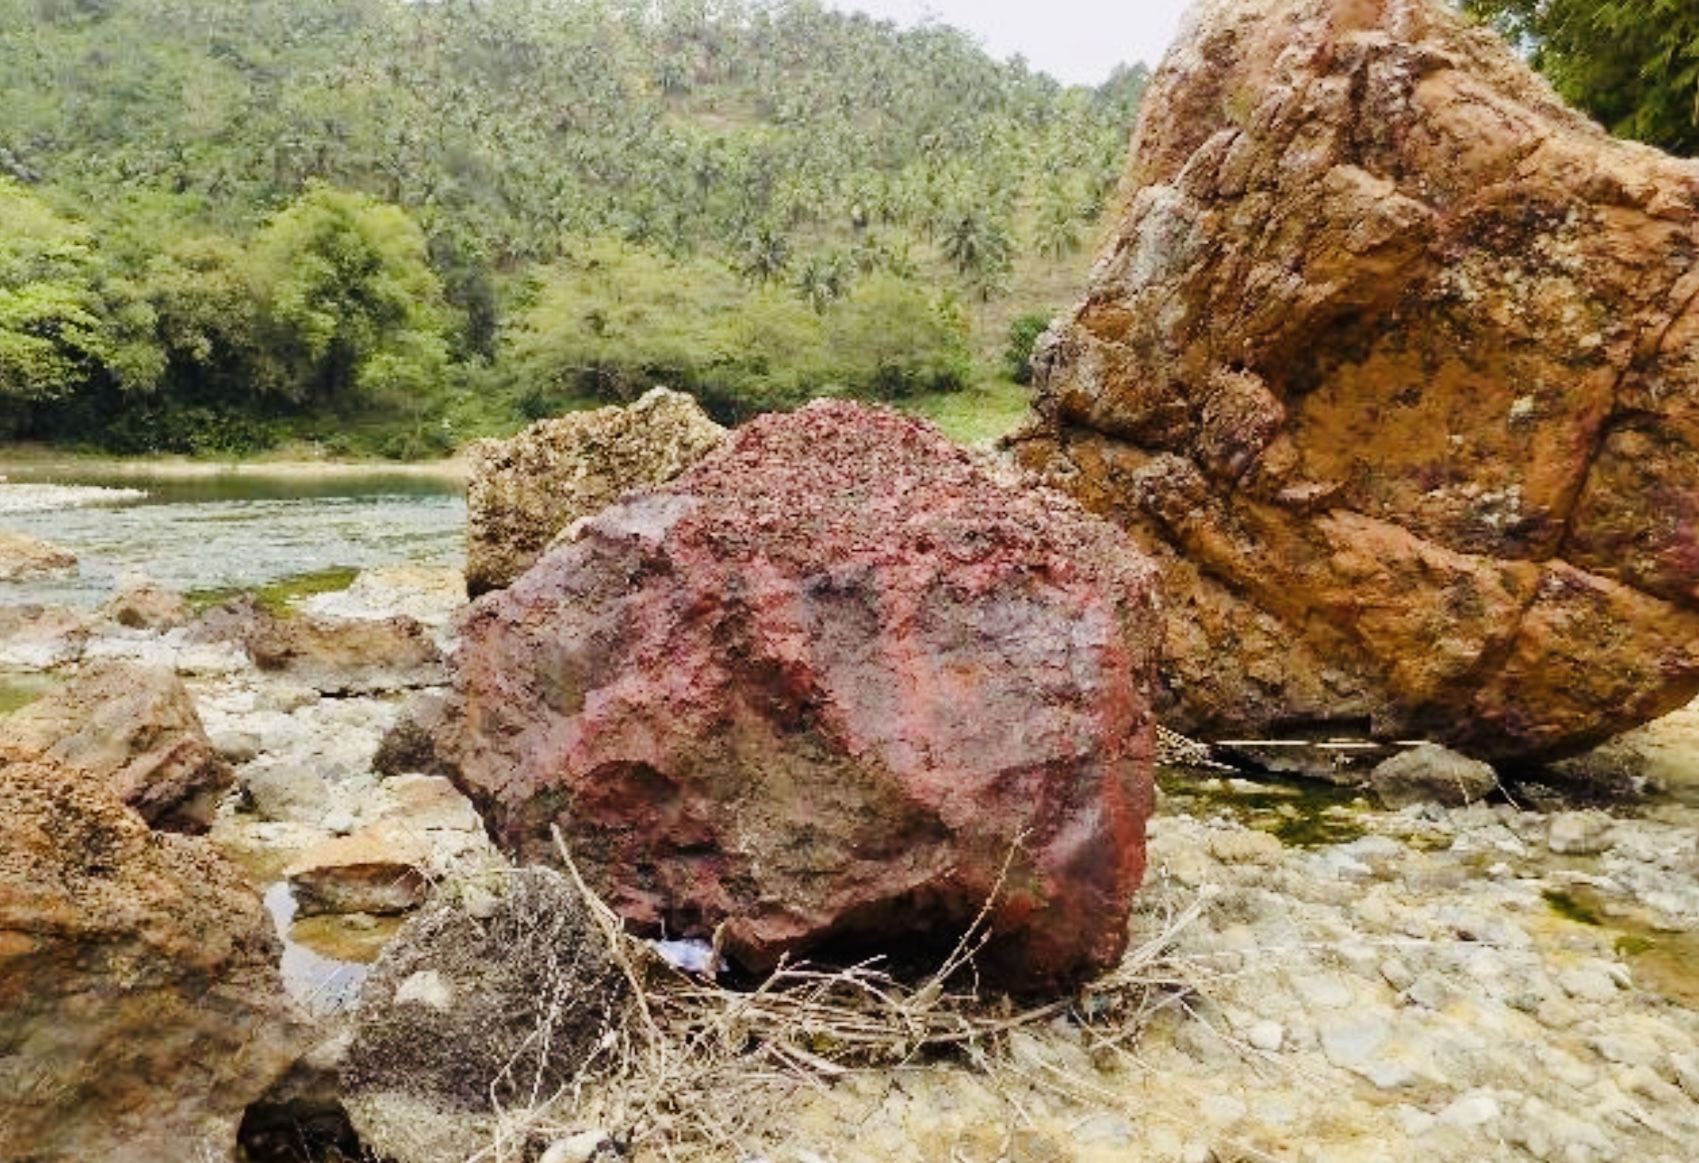 Warisan ‘Harta Karun’ dari Tasikmalaya Ini Diincar Para Pecinta Batu Mulia, Harganya Mencapai Miliaran Rupiah